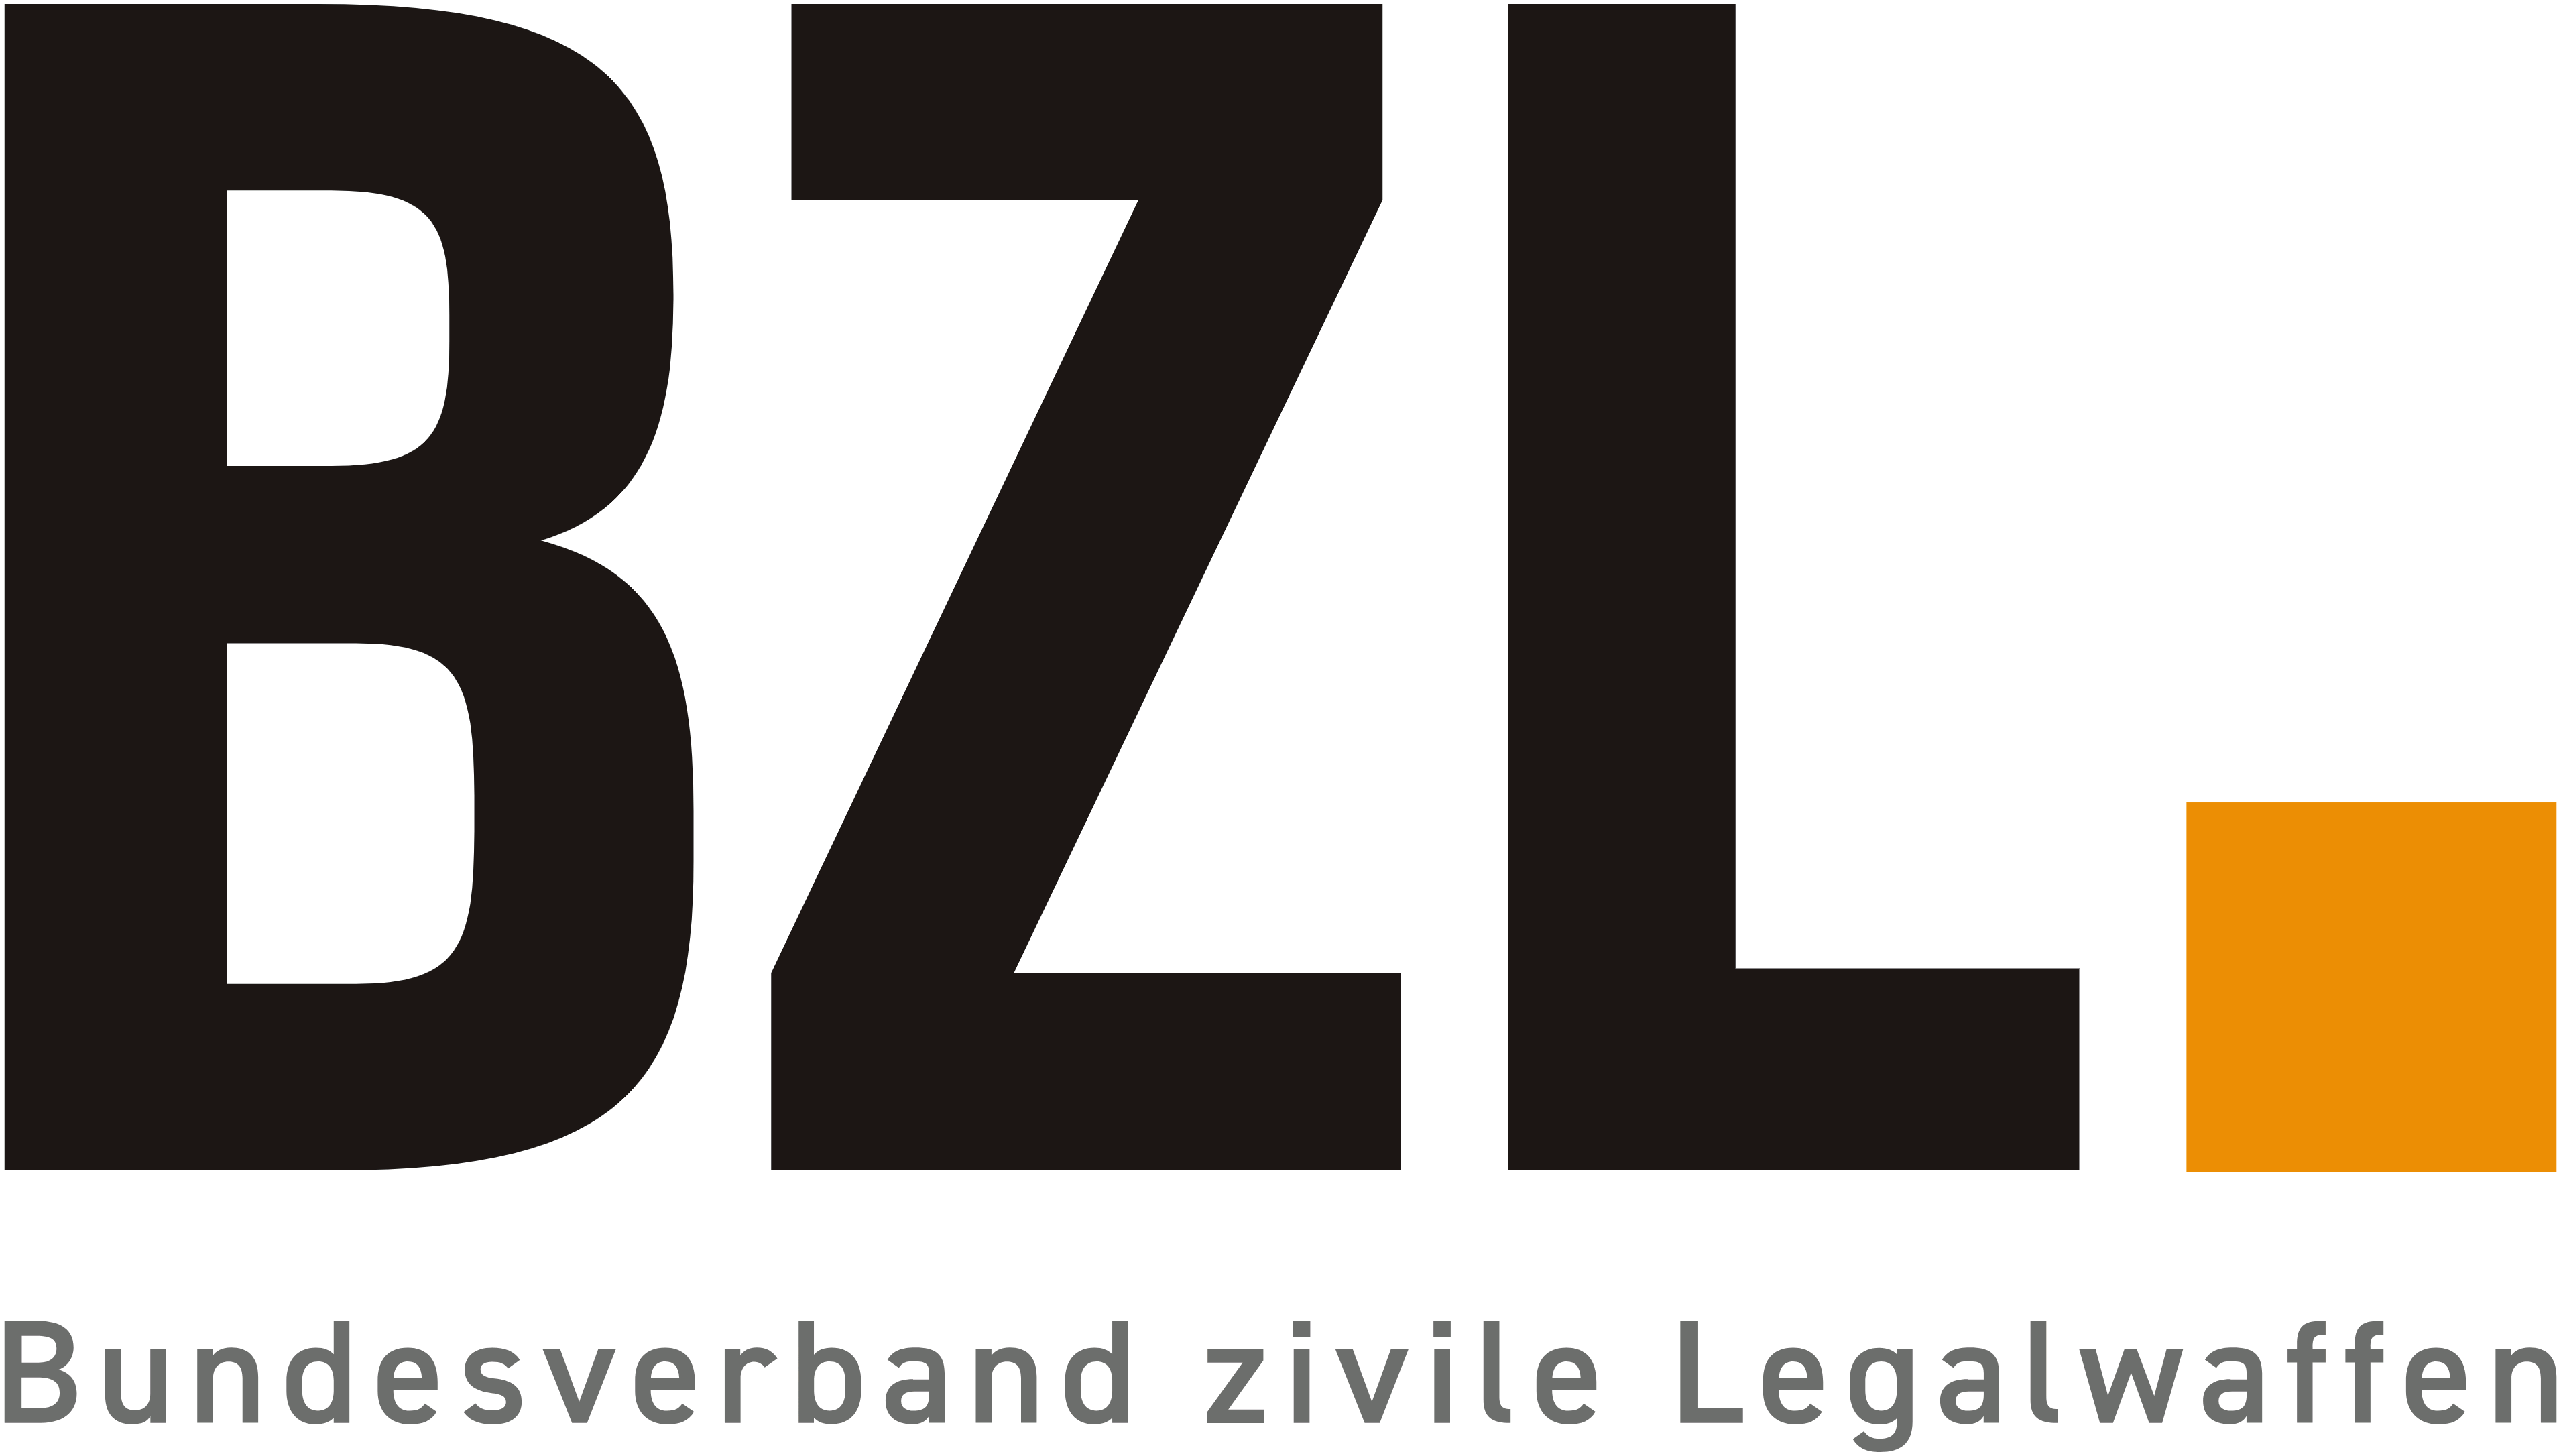 Bundesverband zivile Legalwaffen (BZL)